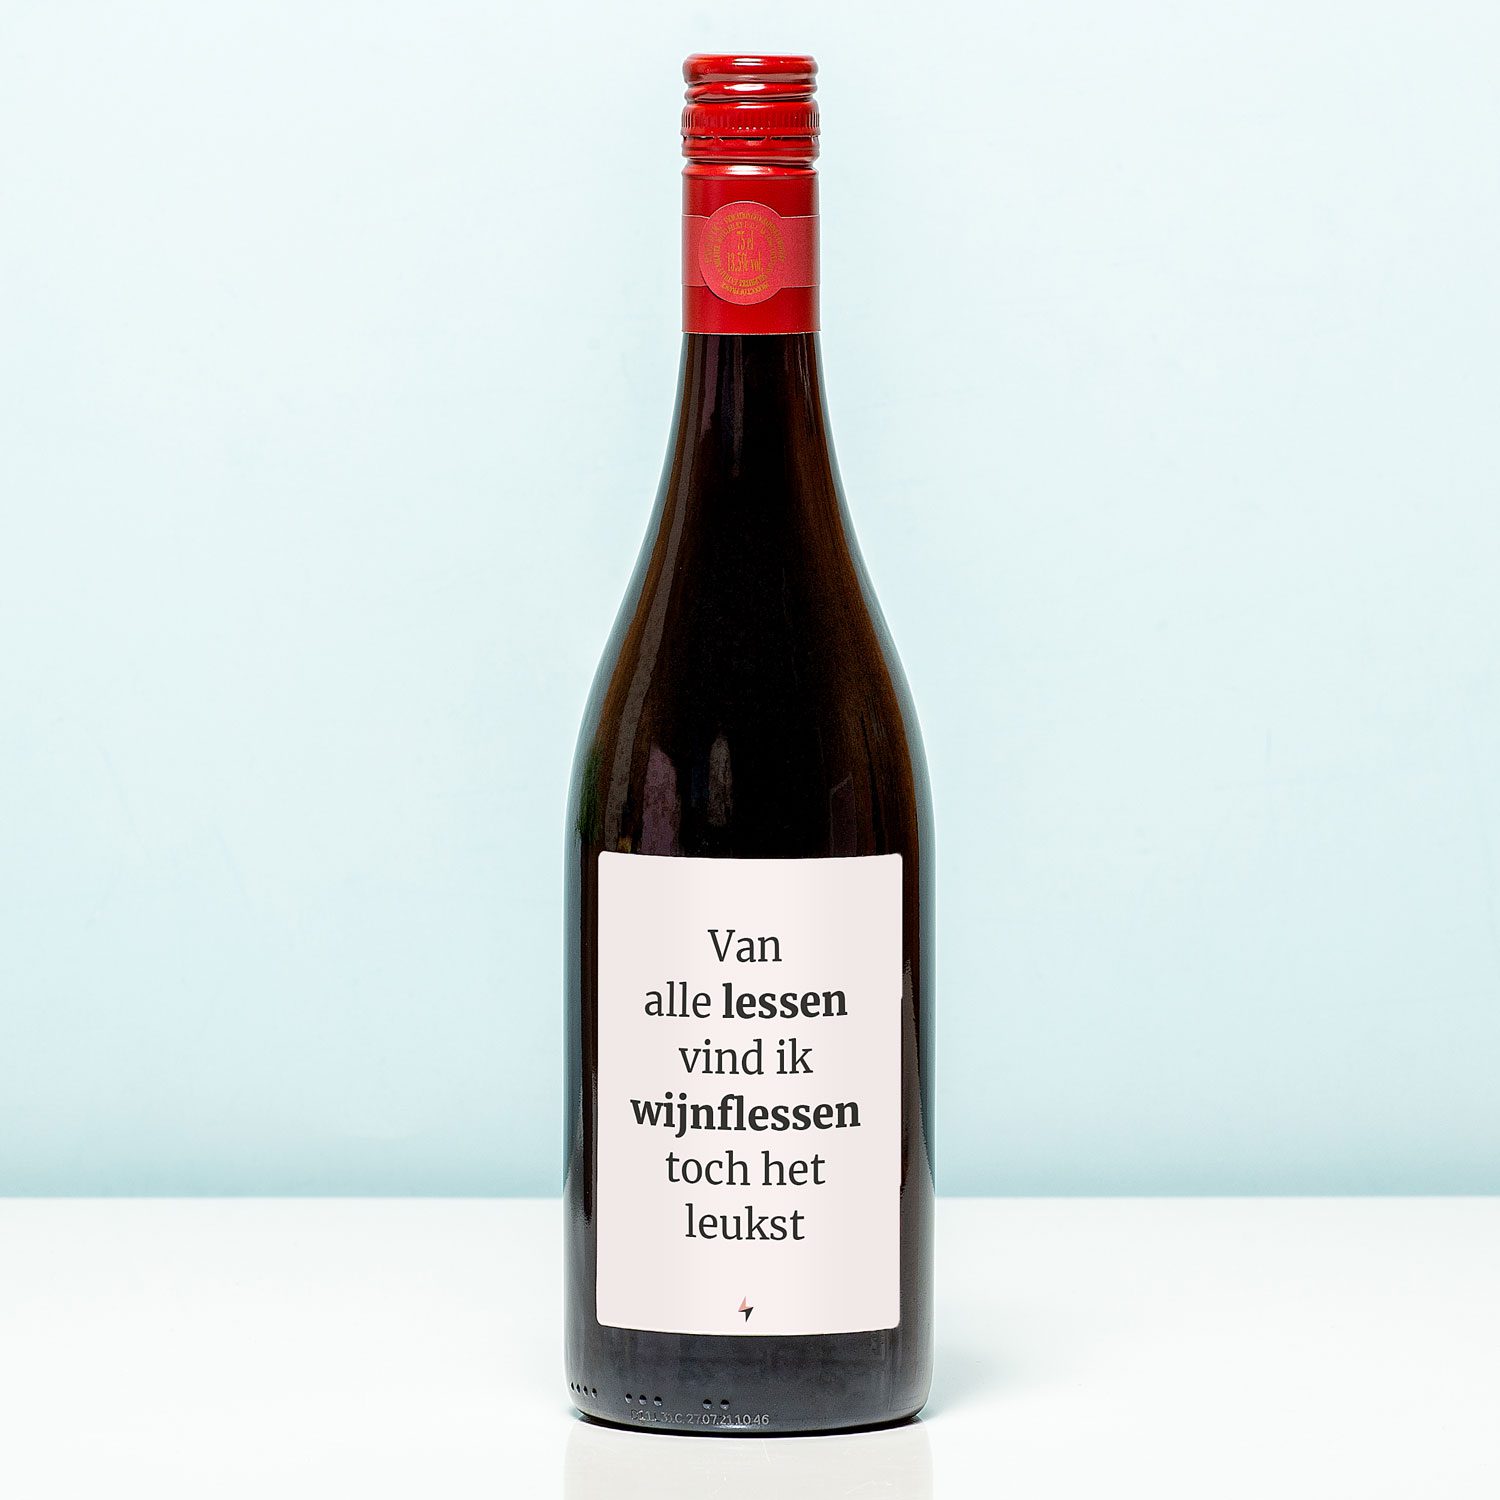 Wijnfles Van Alle Lessen - Rood (Merlot)